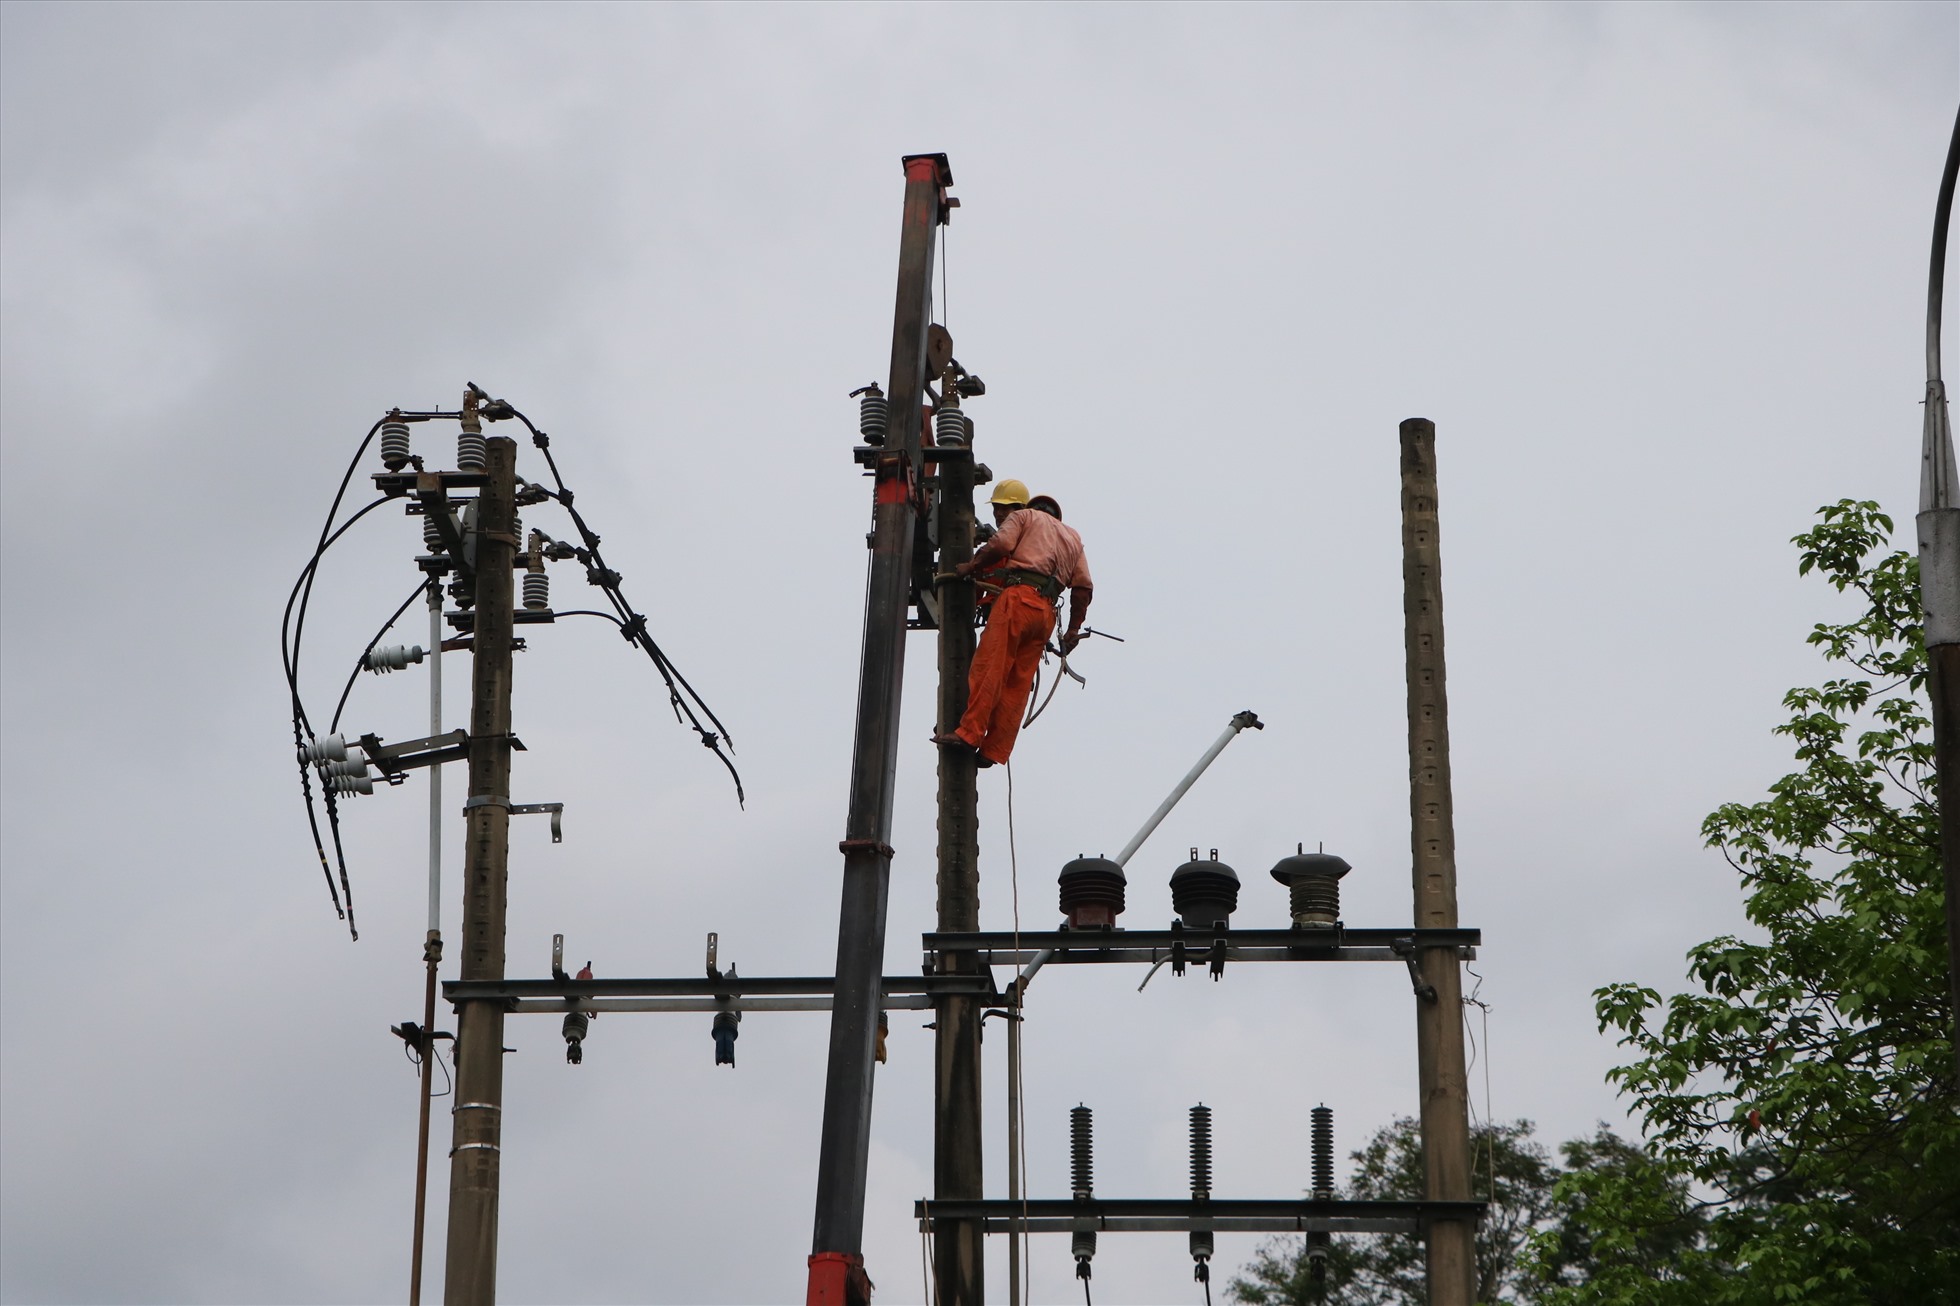 Công ty Điện lực Thừa Thiên Huế đã tổ chức kiểm tra, gia cố hệ thống điện và có phương án đảm bảo an toàn lưới điện; Đảm bảo cung cấp điện cho các Trung tâm chỉ huy. Khi bão đổ bộ, sa thải lưới điện toàn bộ để đảm bảo an toàn.